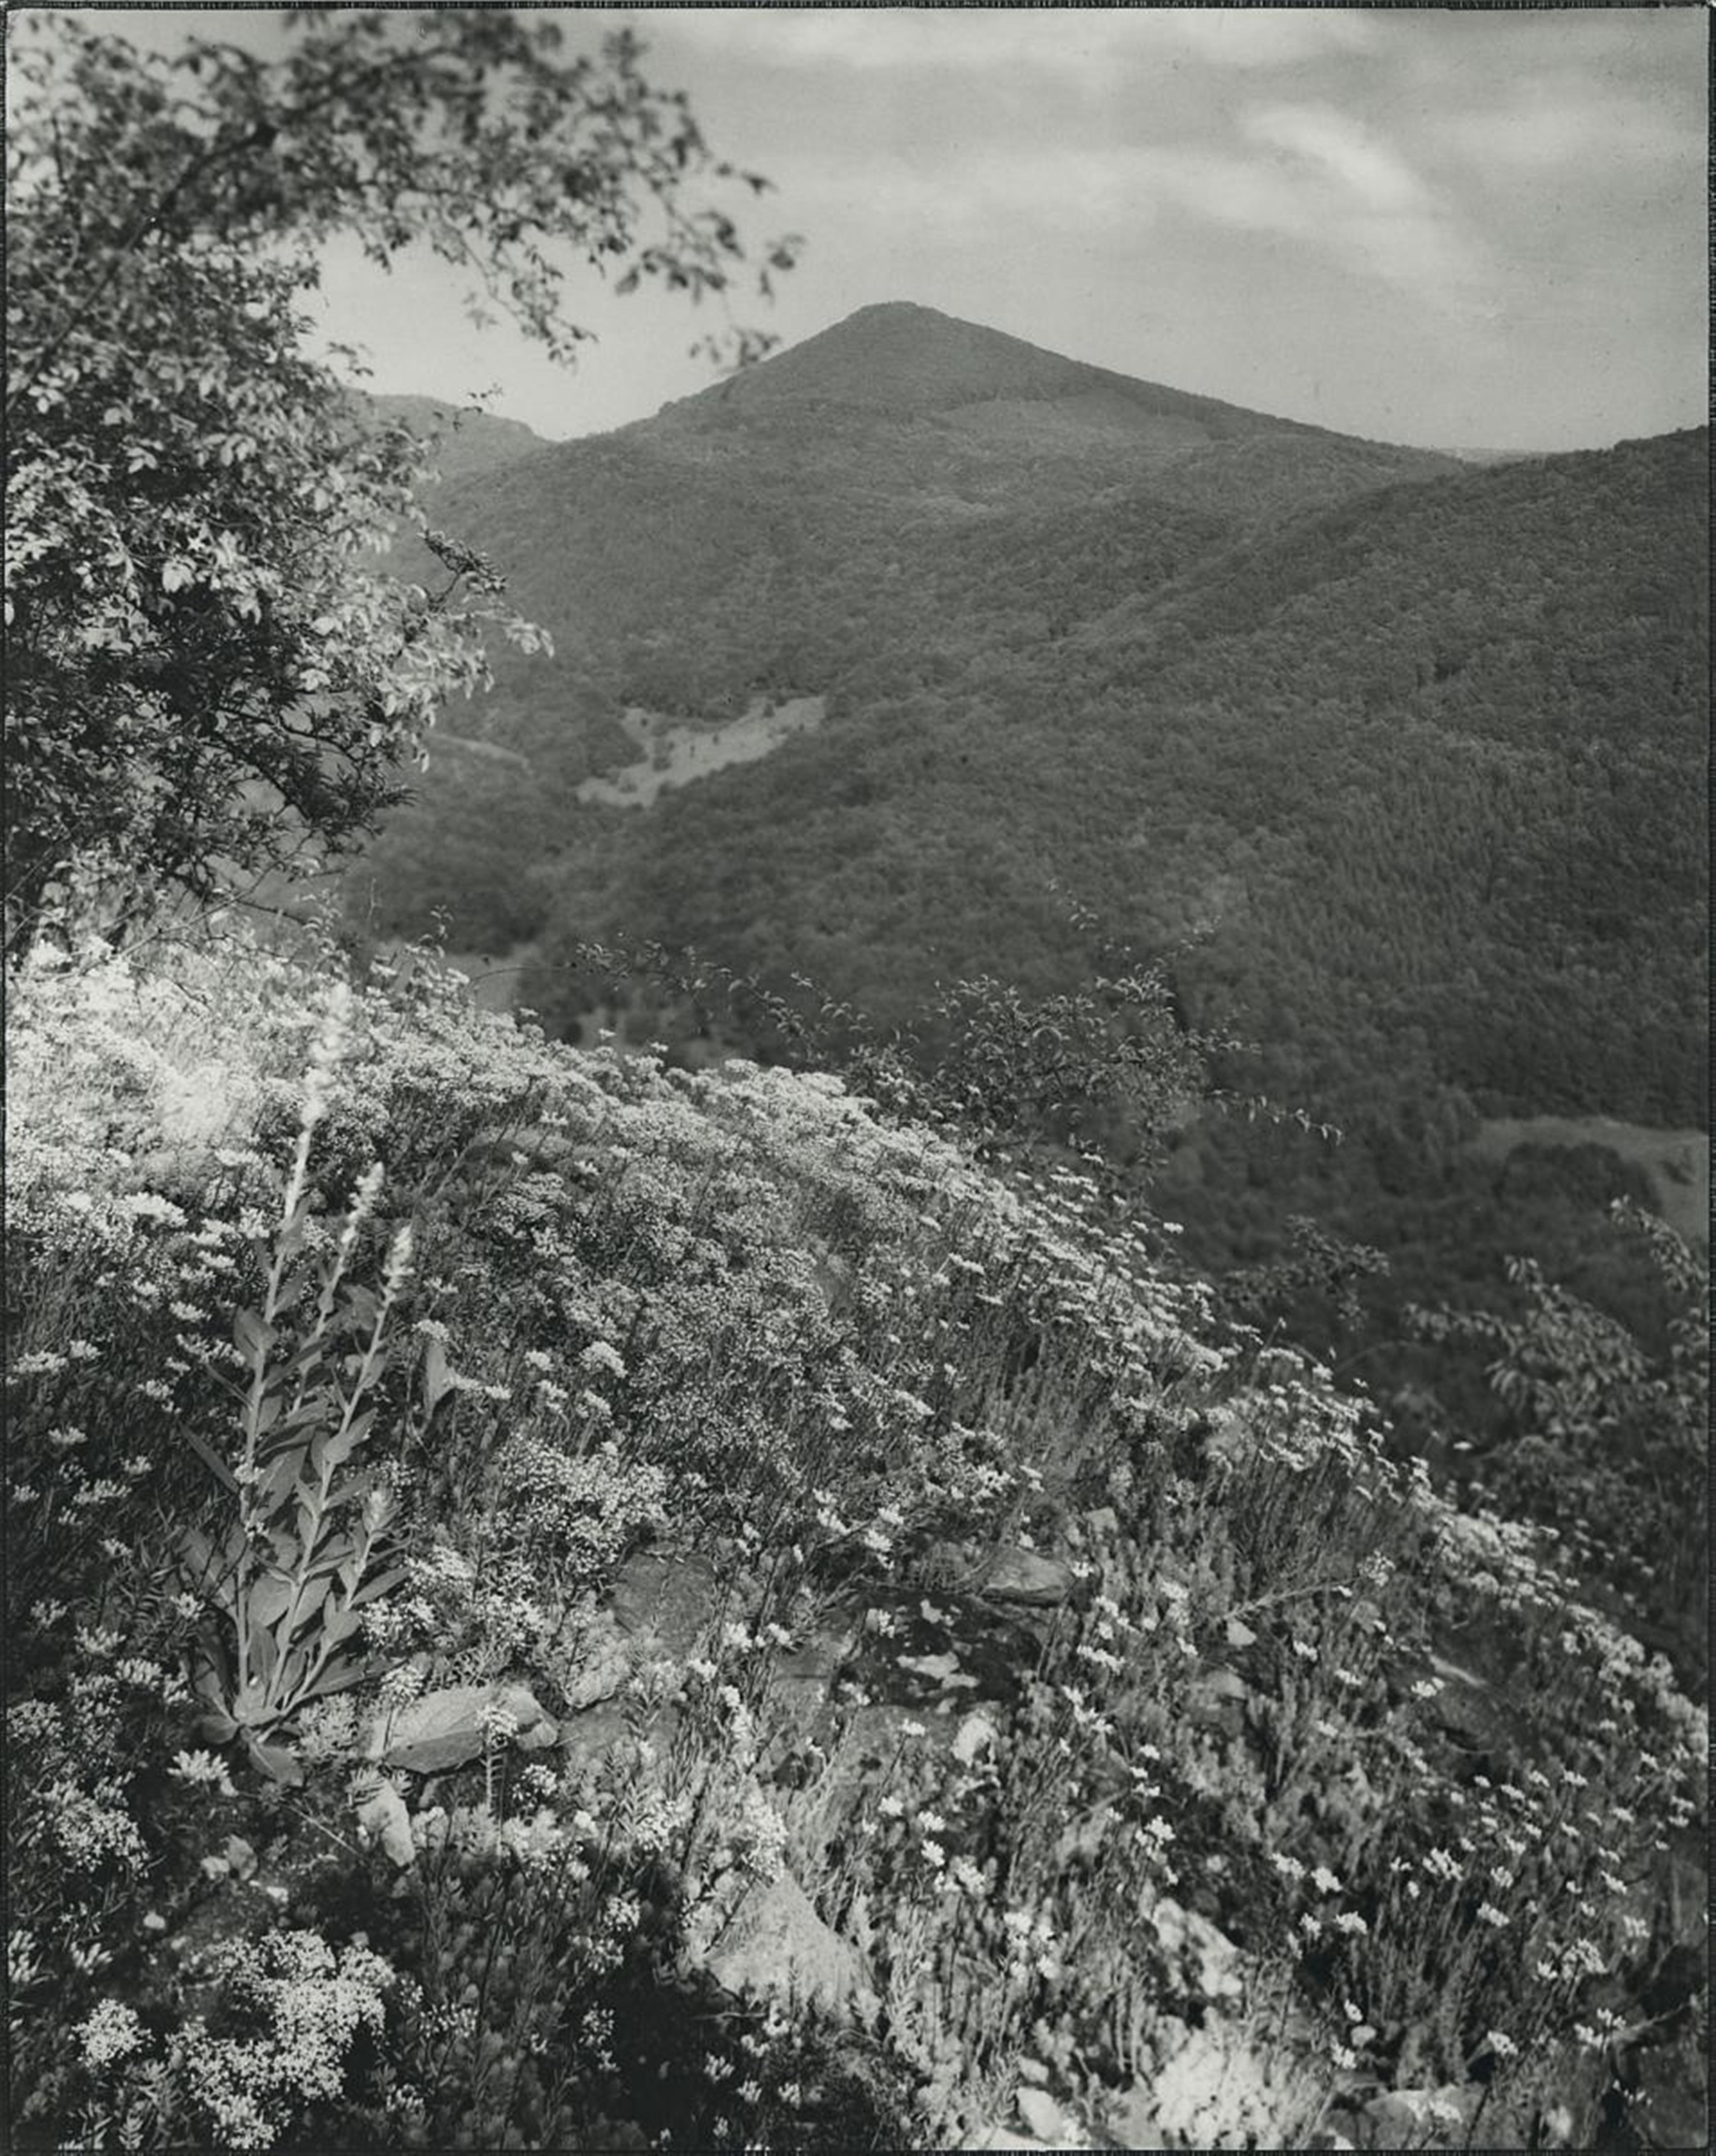 August Sander - Mauerpfeffer, sedum acre (Stonecrop, sedum acre) - image-1